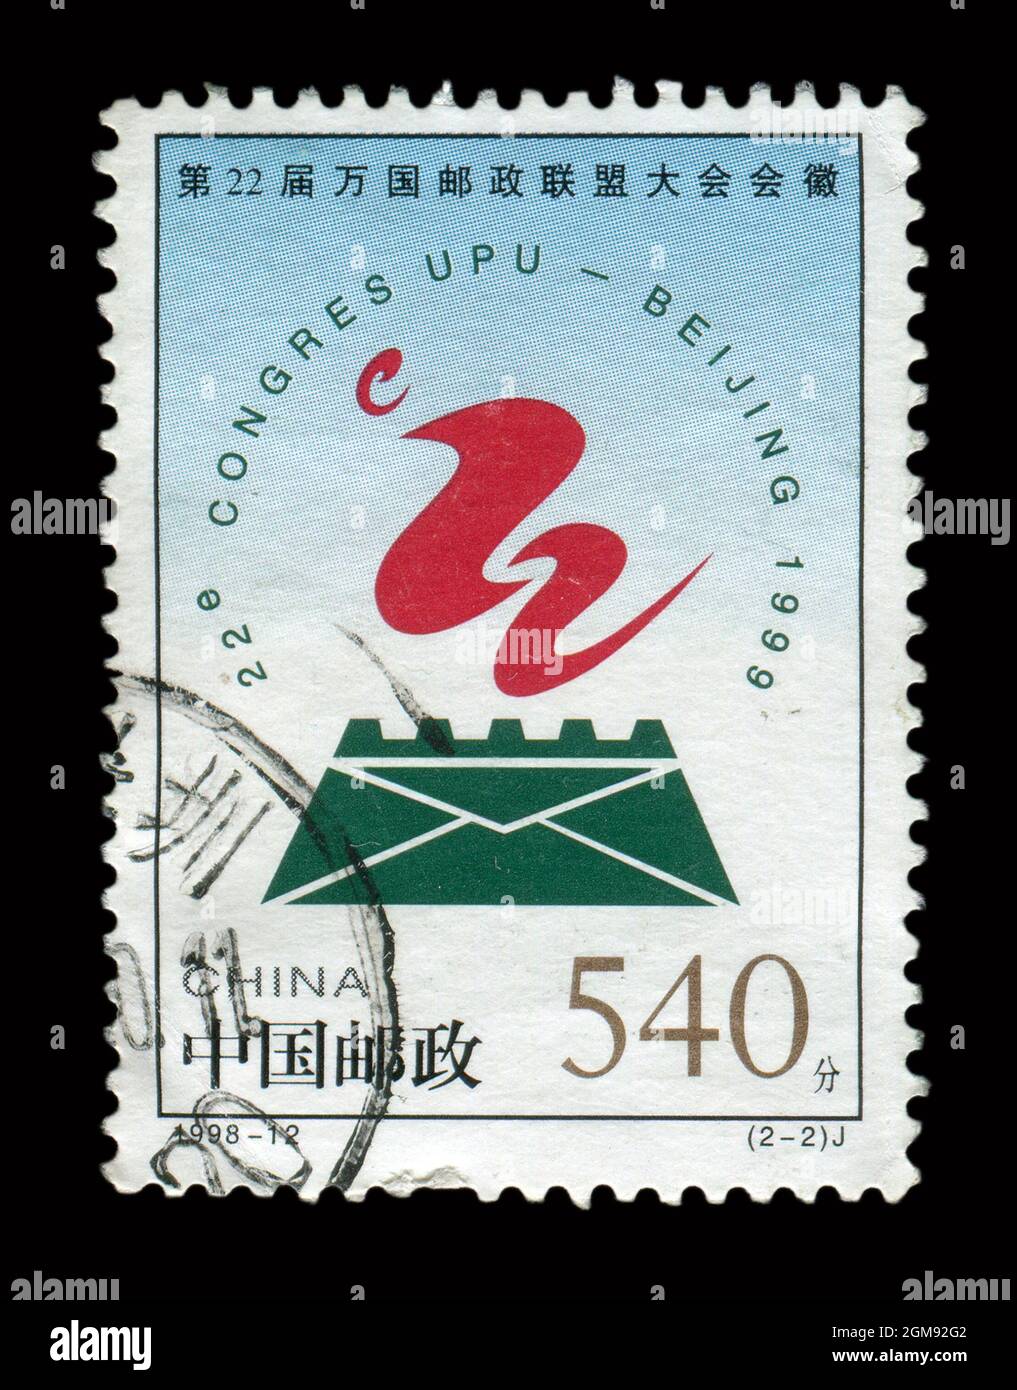 Francobollo stampato in Cina mostra l'immagine del 1998-12 emblema del 22° Congresso dell'Unione postale universale, circa 1998. Foto Stock